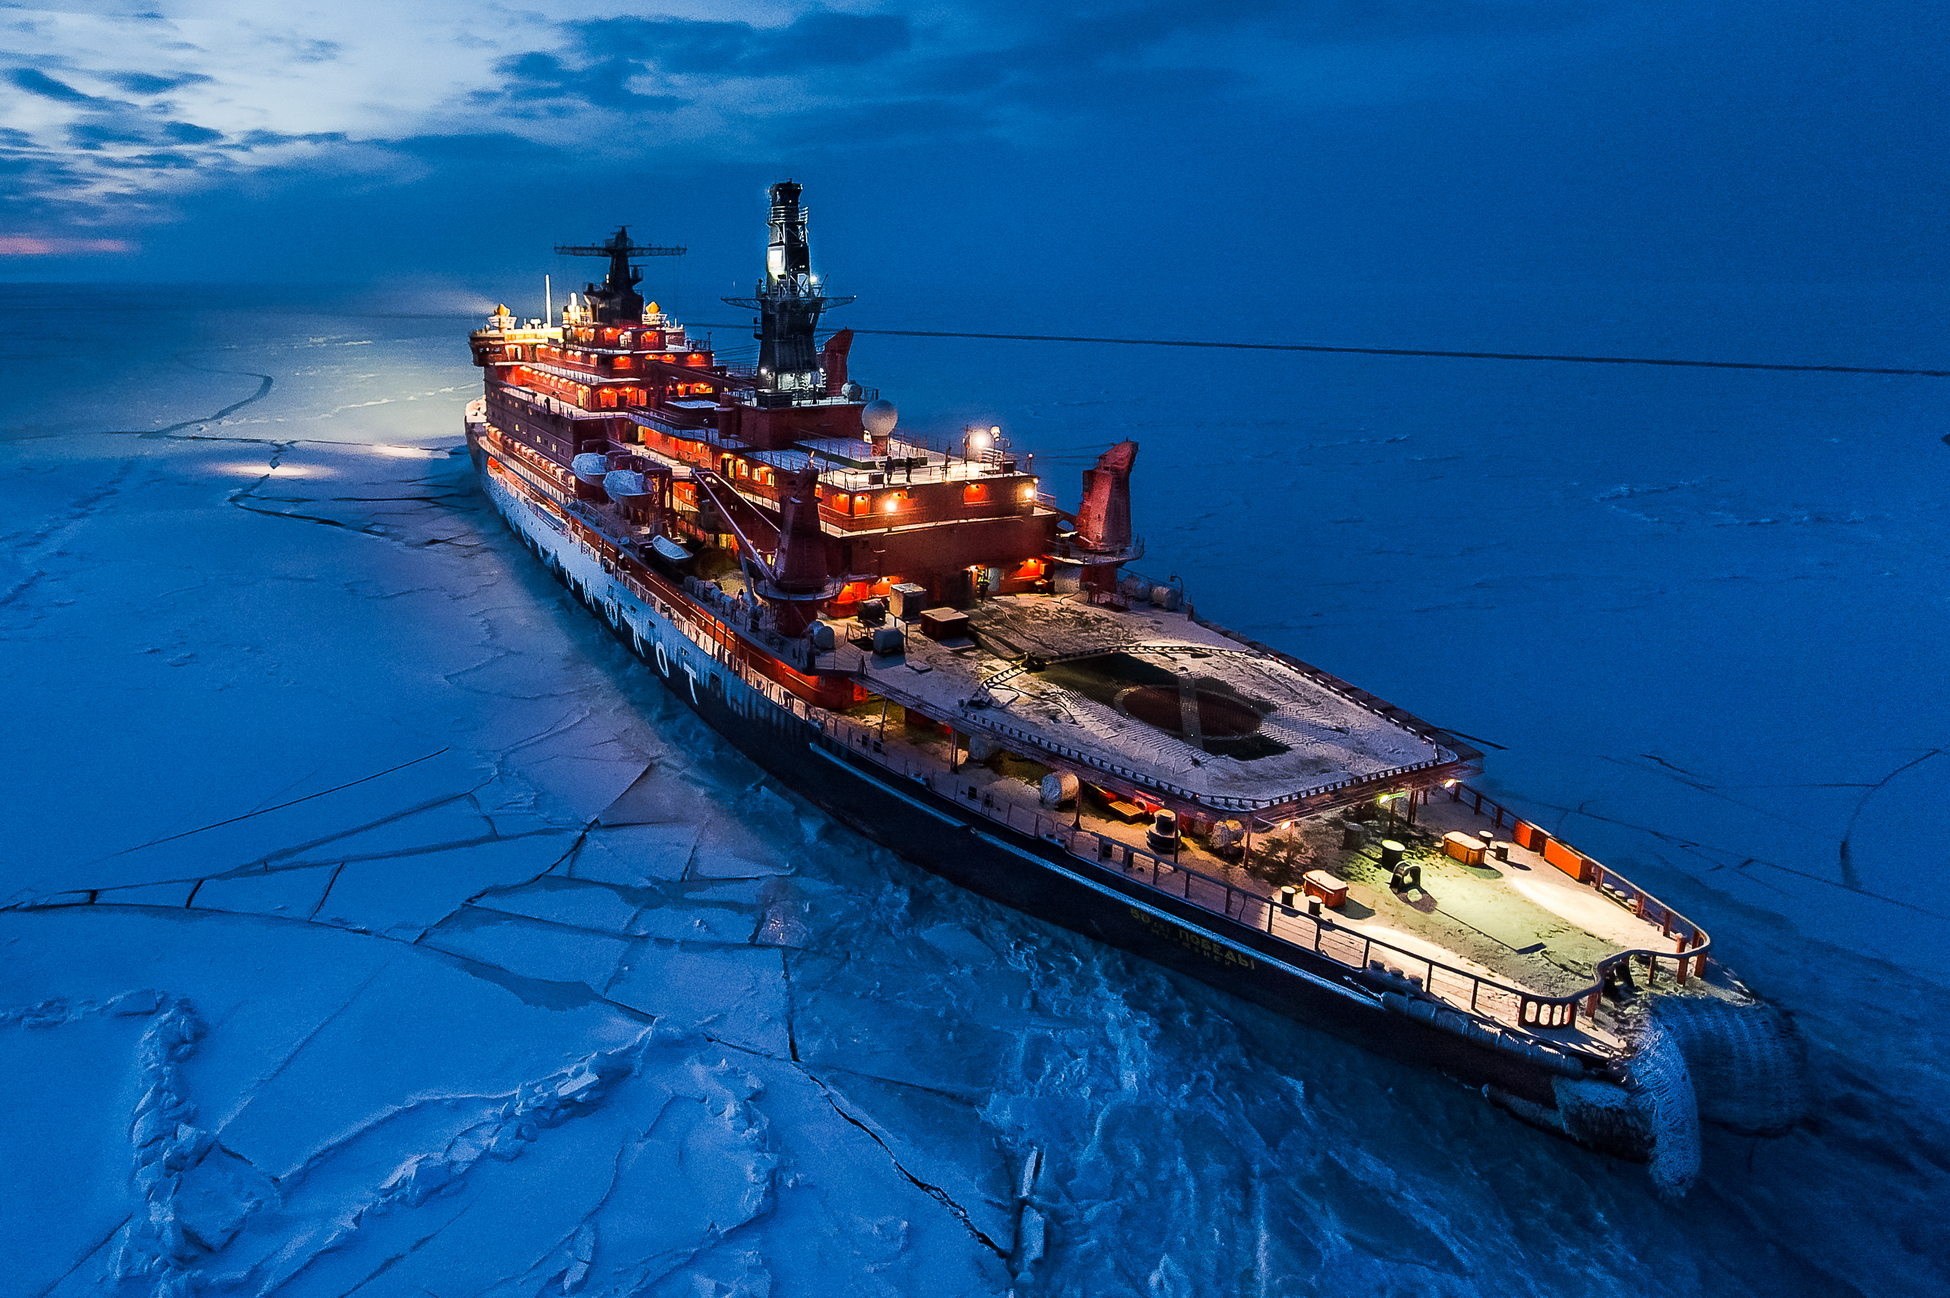 Арктика сегодня. «Росатом» подготовил проект организации круглогодичного судоходства на Севморпути